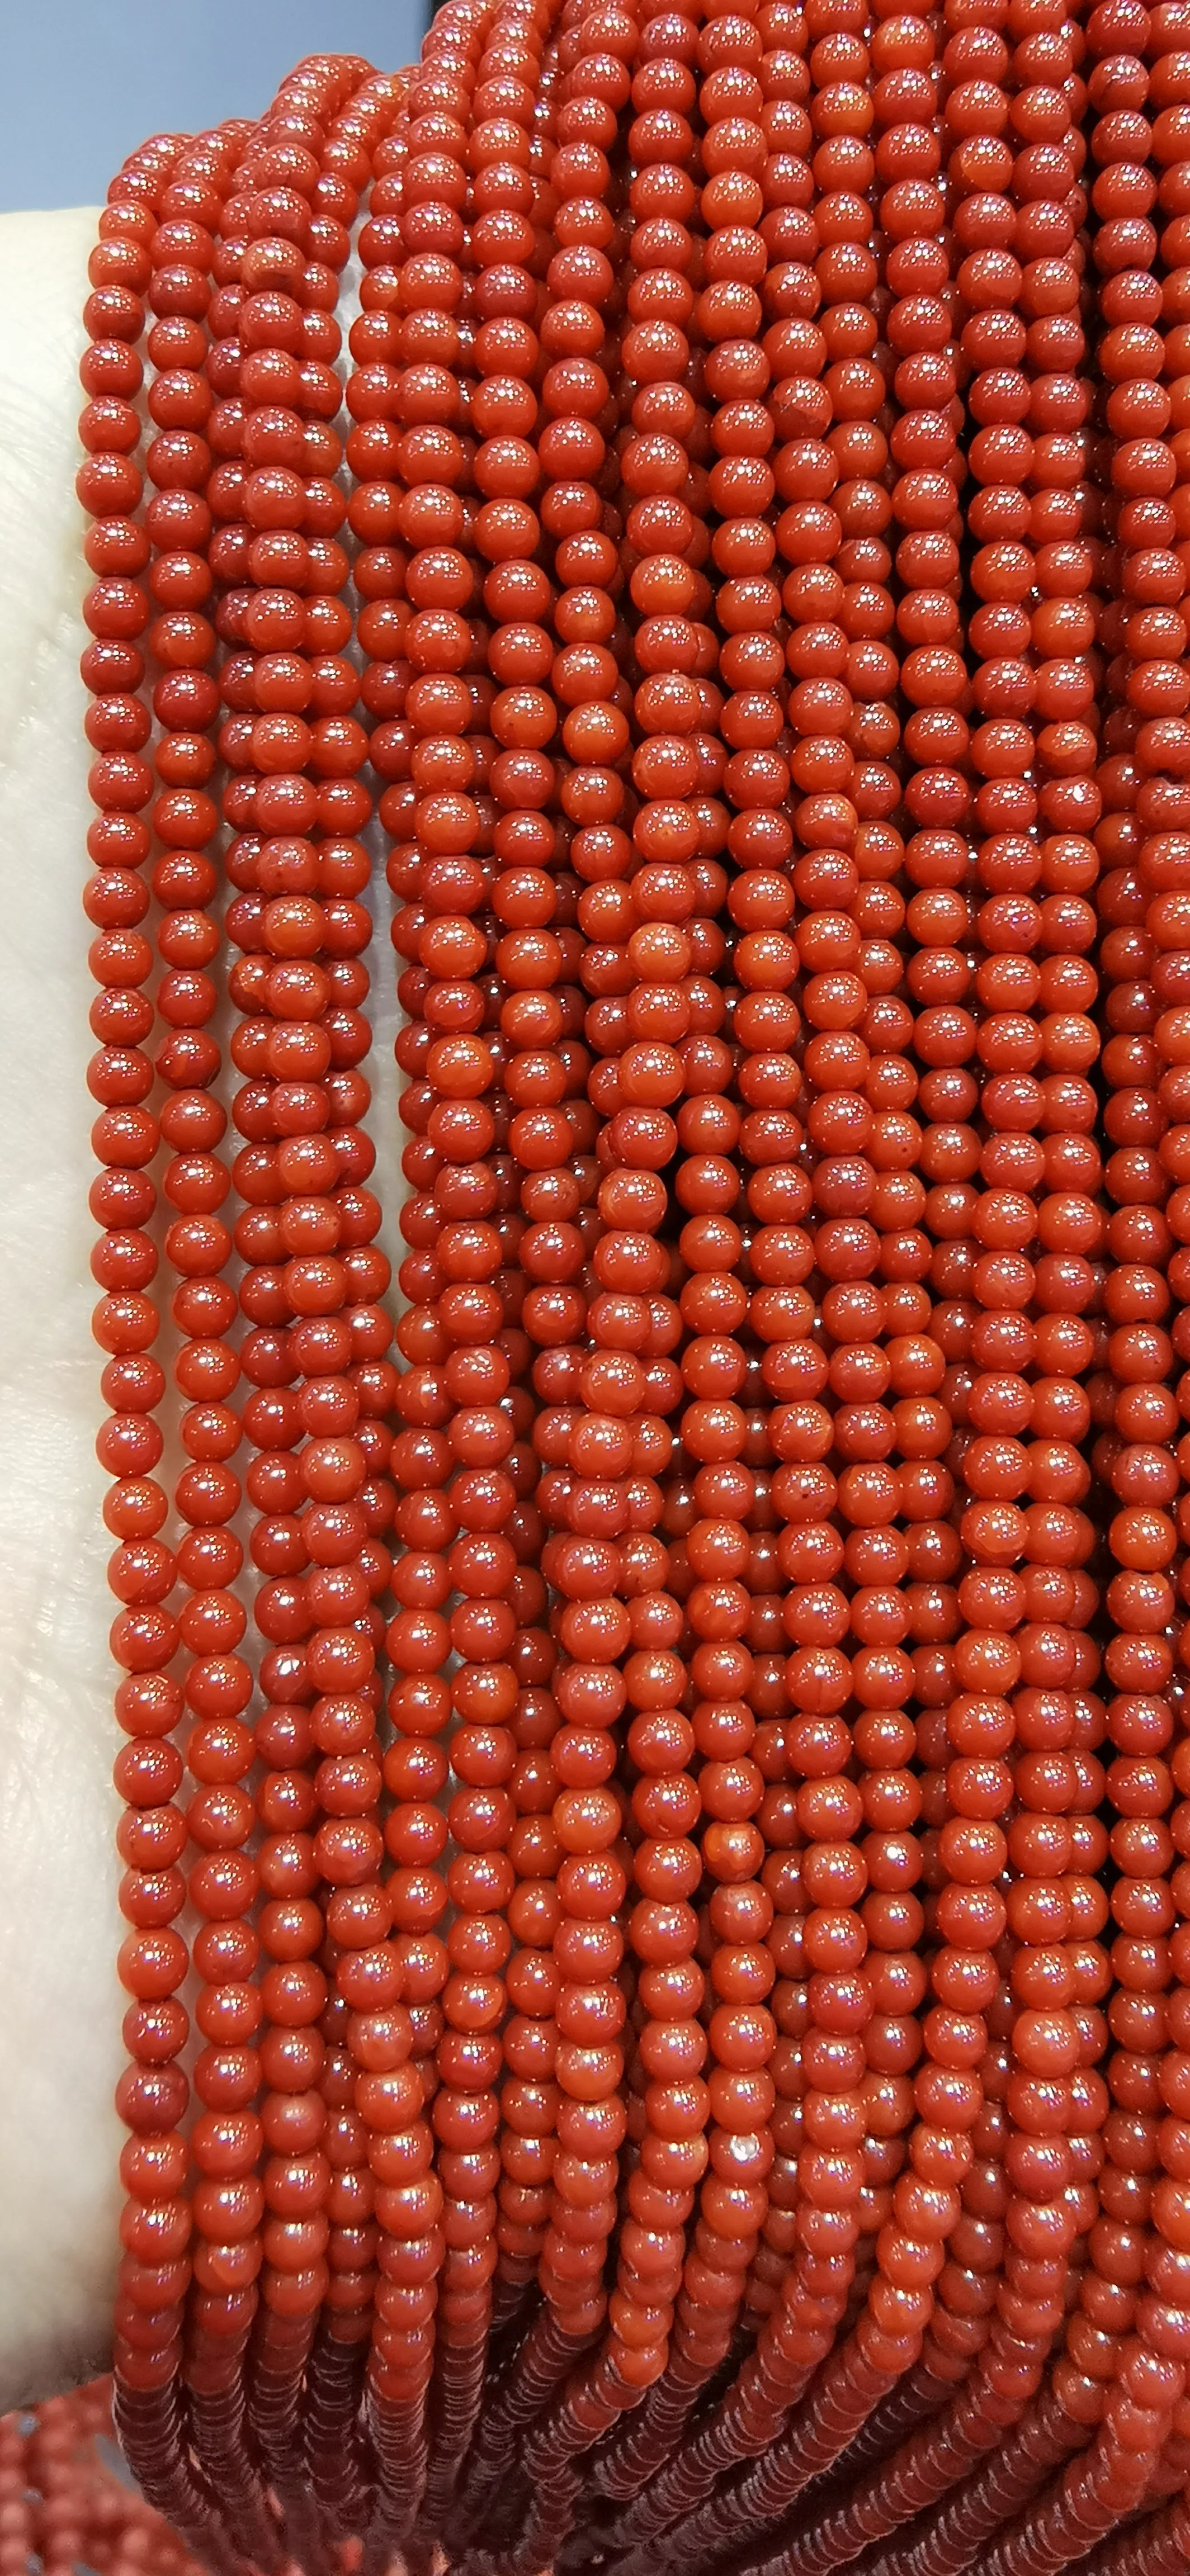 5strands echte seltene rote Koralle glatte runde Perlen Naturstein Edelstein 3-4 mm 16inch318k